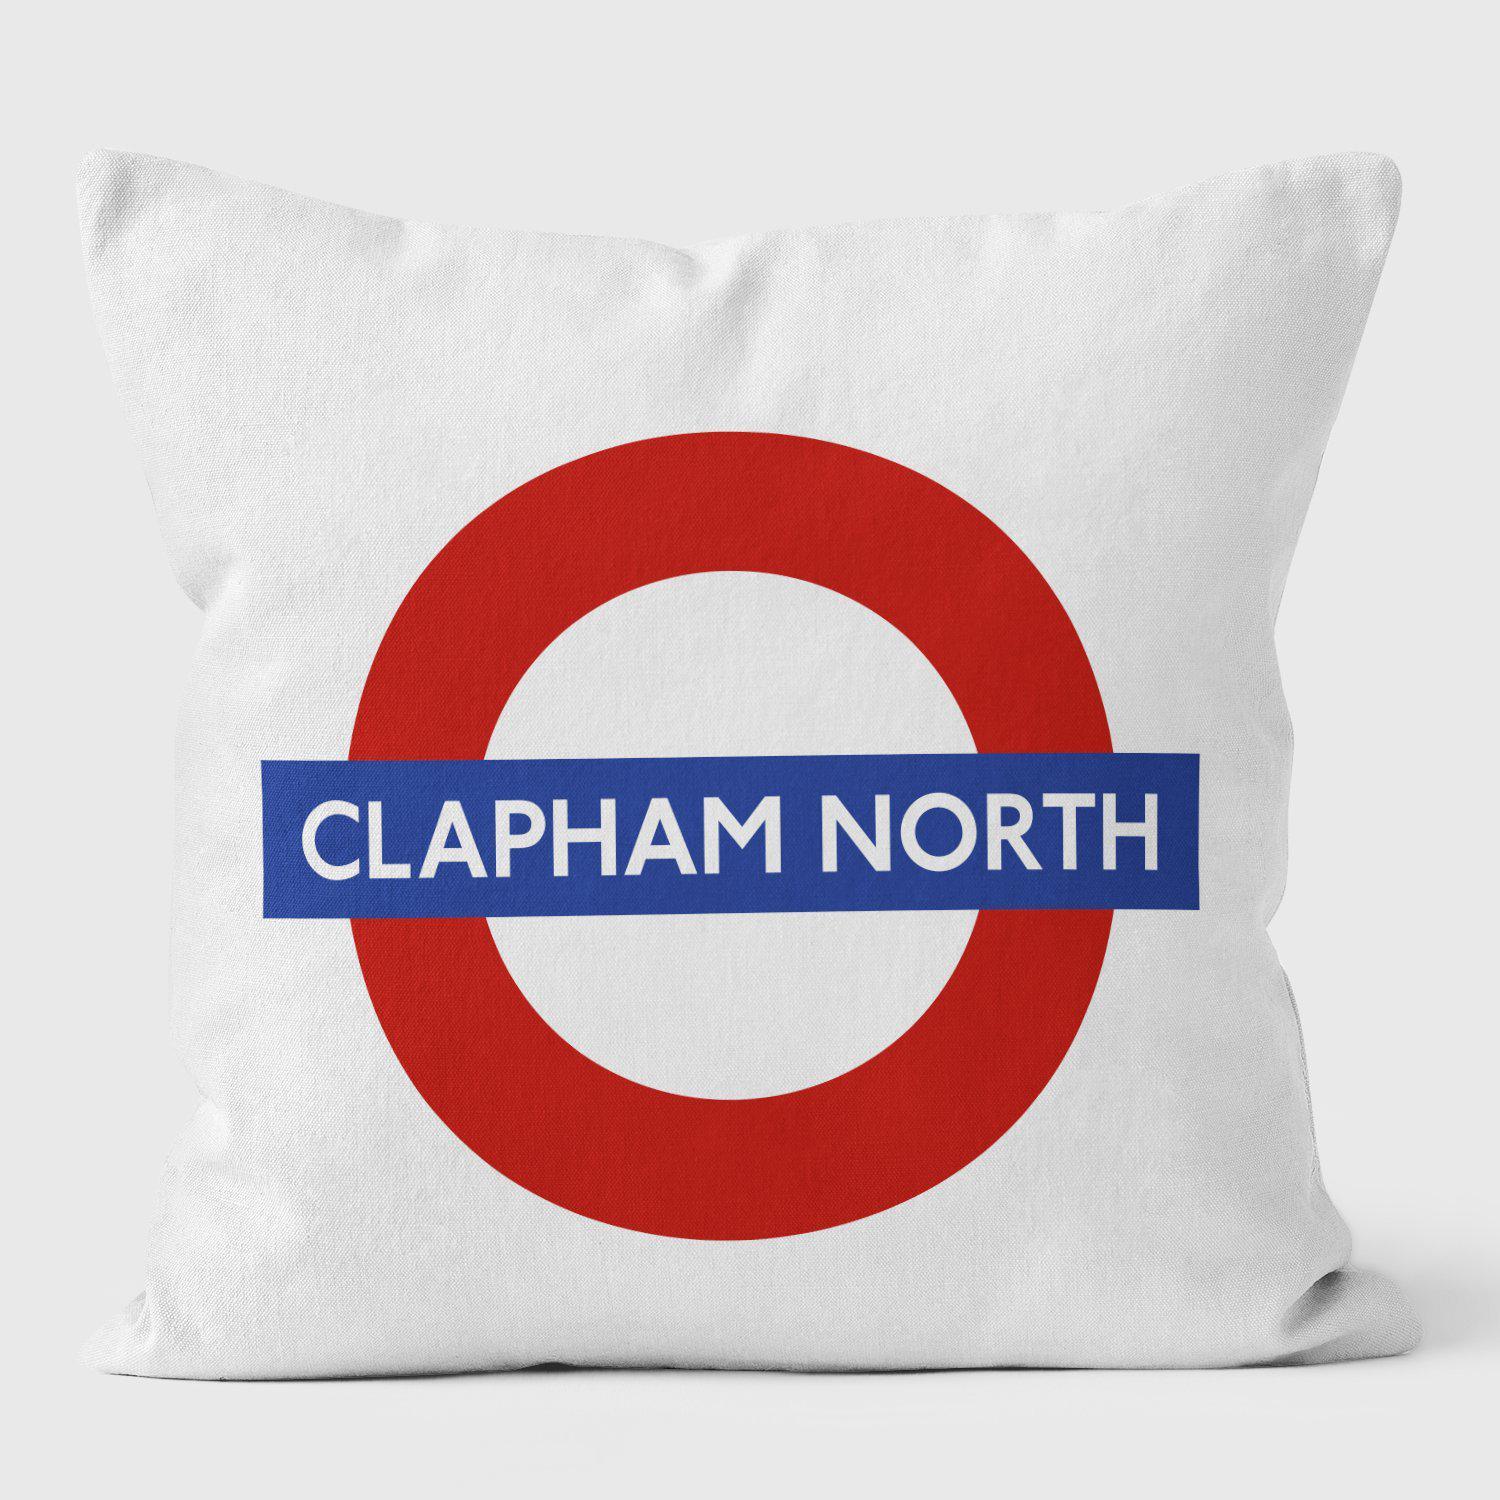 Clapham North London Underground Tube Station Roundel Cushion - Handmade Cushions UK - WeLoveCushions